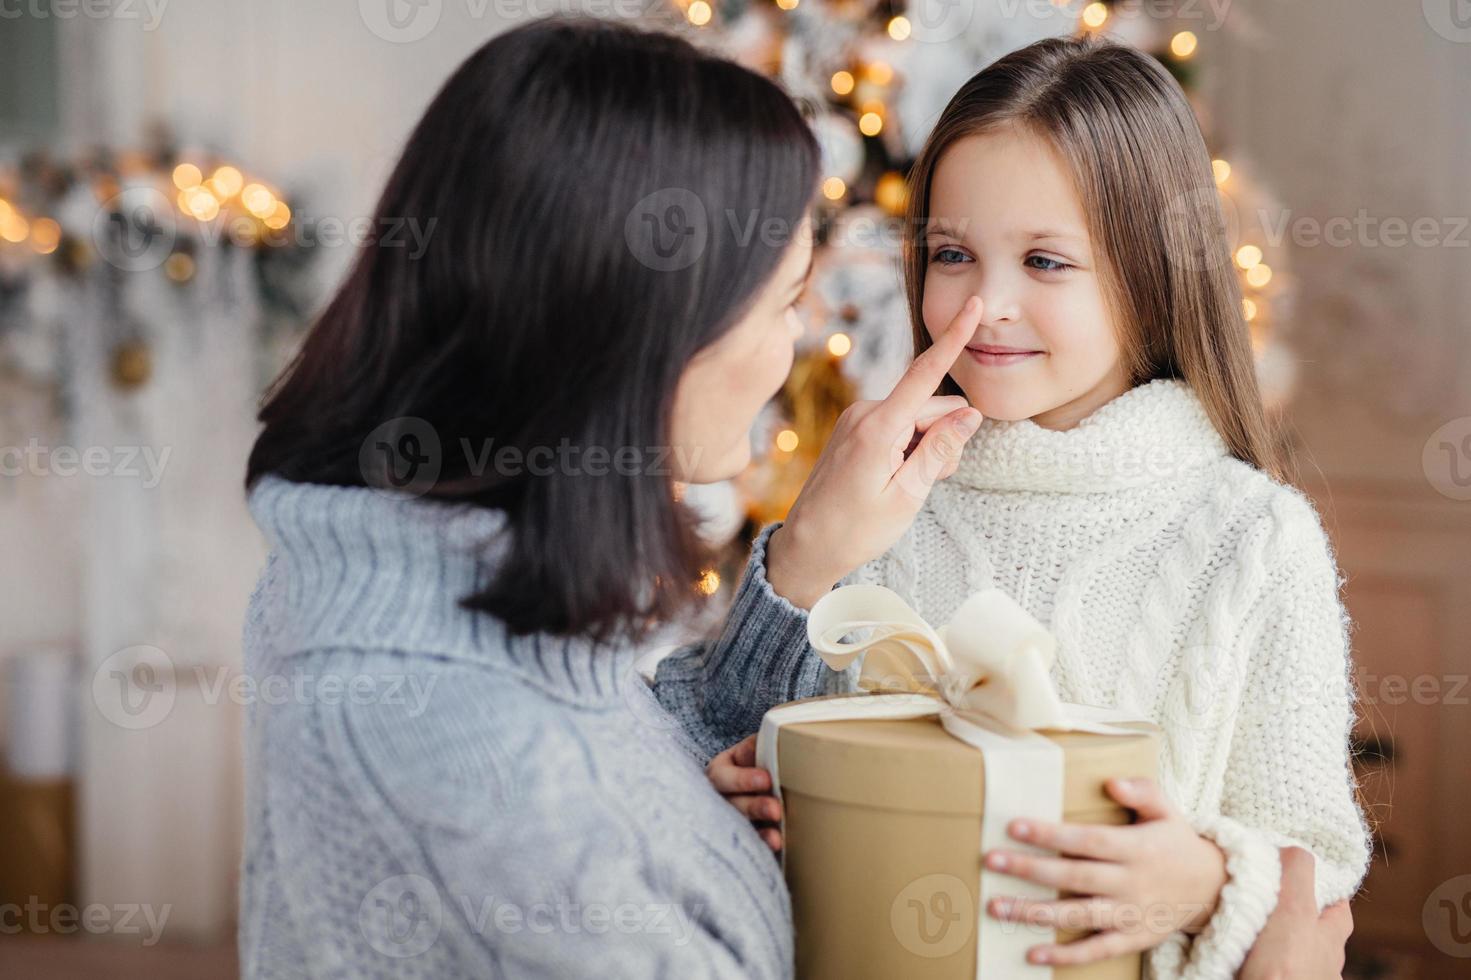 la madre cariñosa le da un regalo a su adorable hijita, prepara una sorpresa en navidad, toca su nariz, expresa un gran amor. familia, celebración, regalos, milagro, concepto de vacaciones de invierno foto